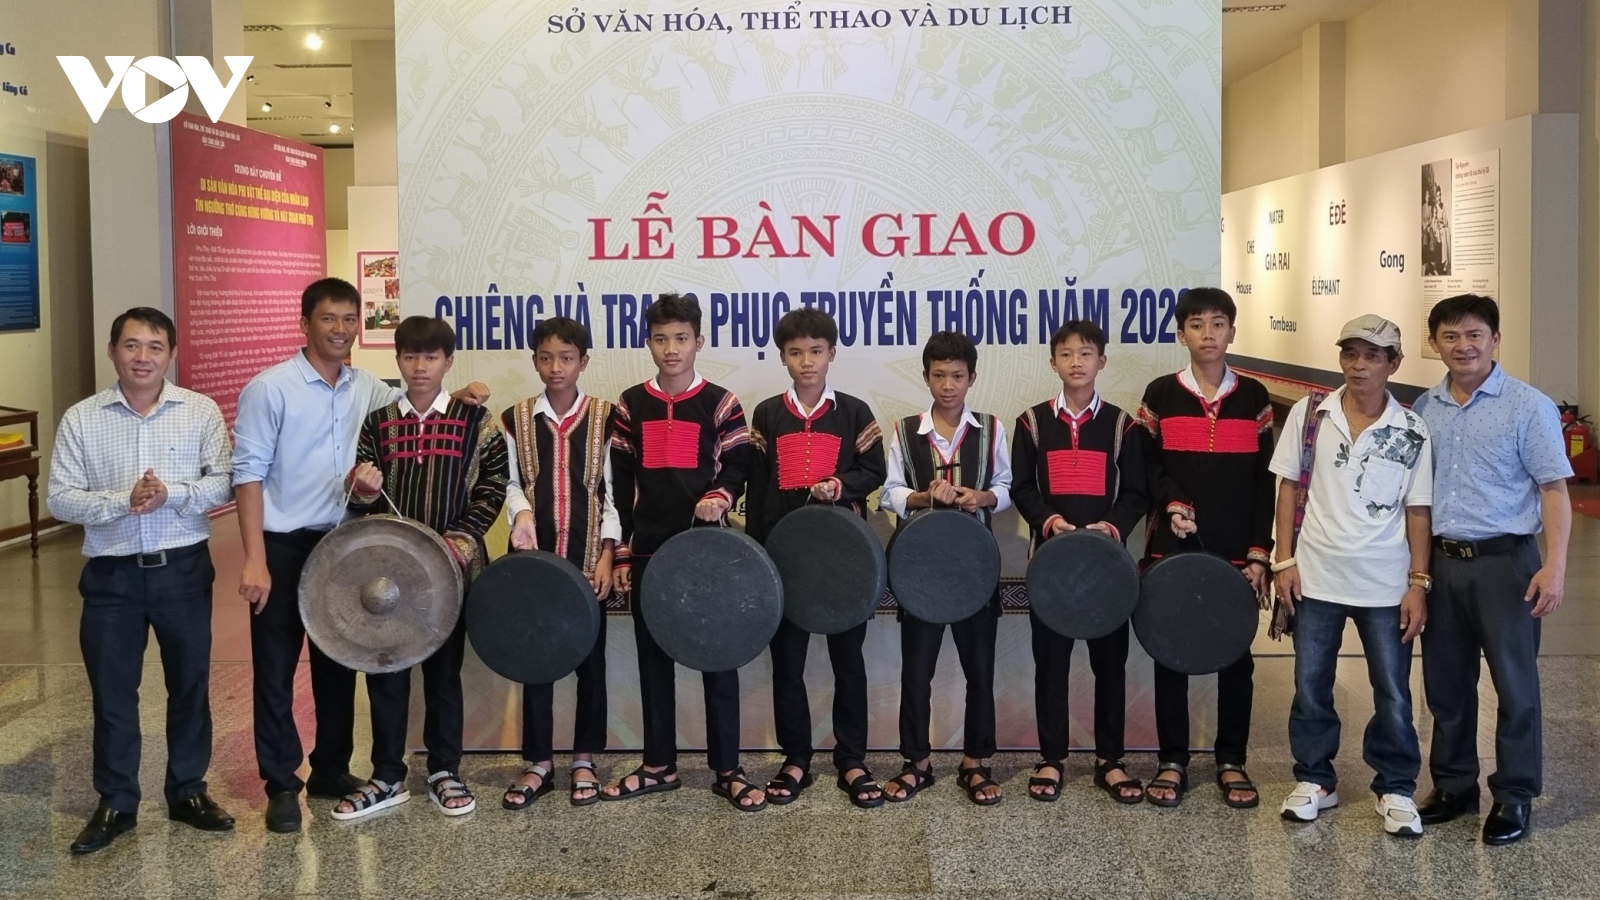 Bàn giao chiêng và trang phục truyền thống cấp cho các đội văn nghệ ở Đắk Lắk